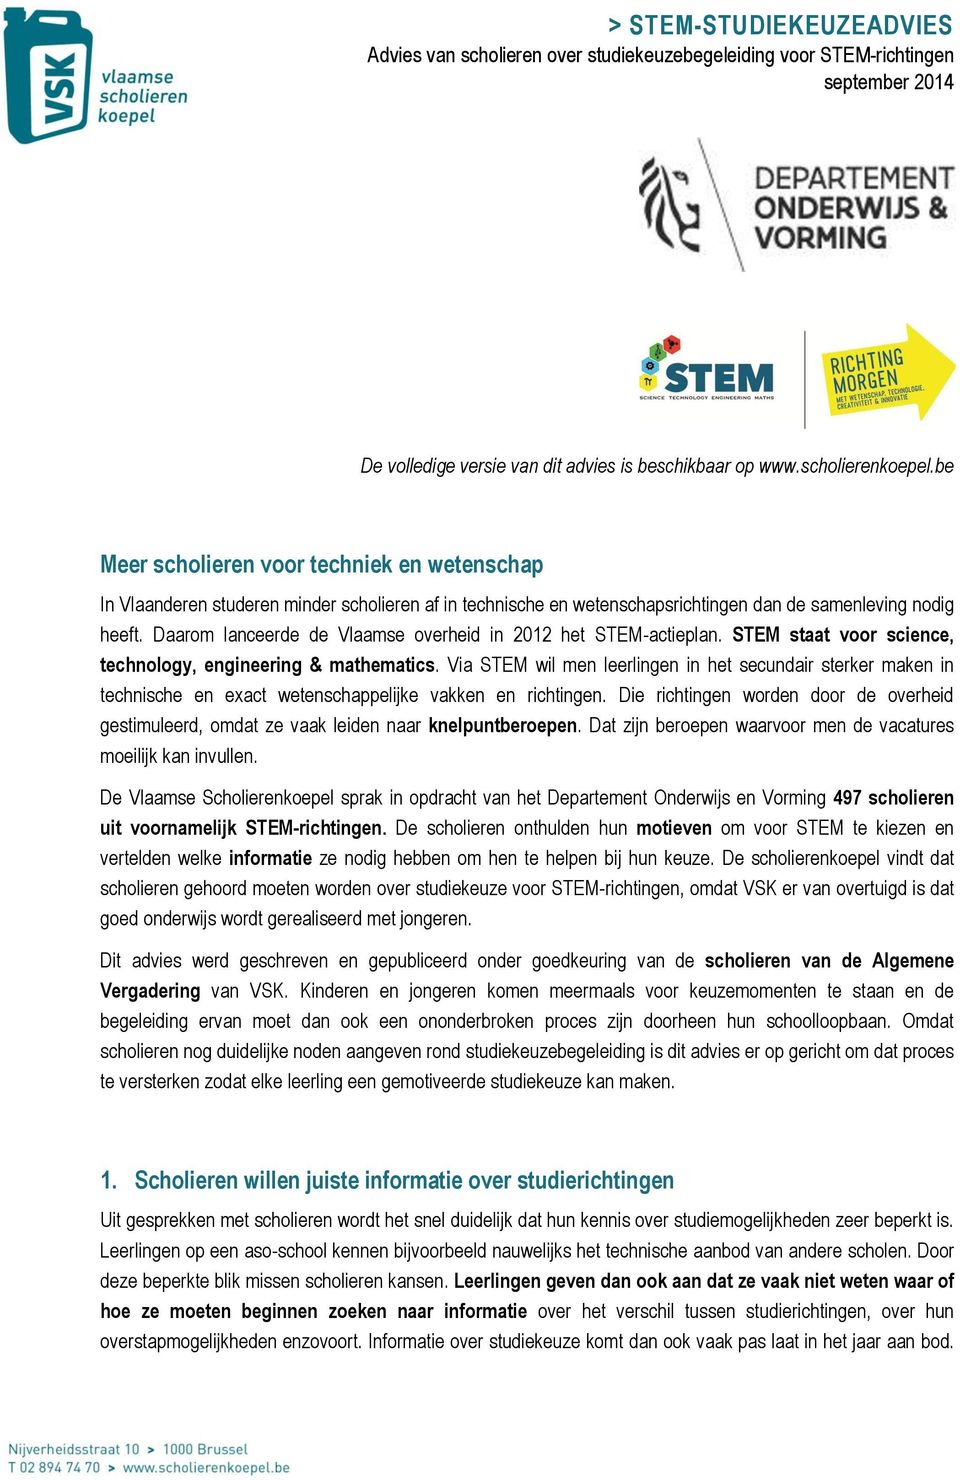 Daarom lanceerde de Vlaamse overheid in 2012 het STEM-actieplan. STEM staat voor science, technology, engineering & mathematics.